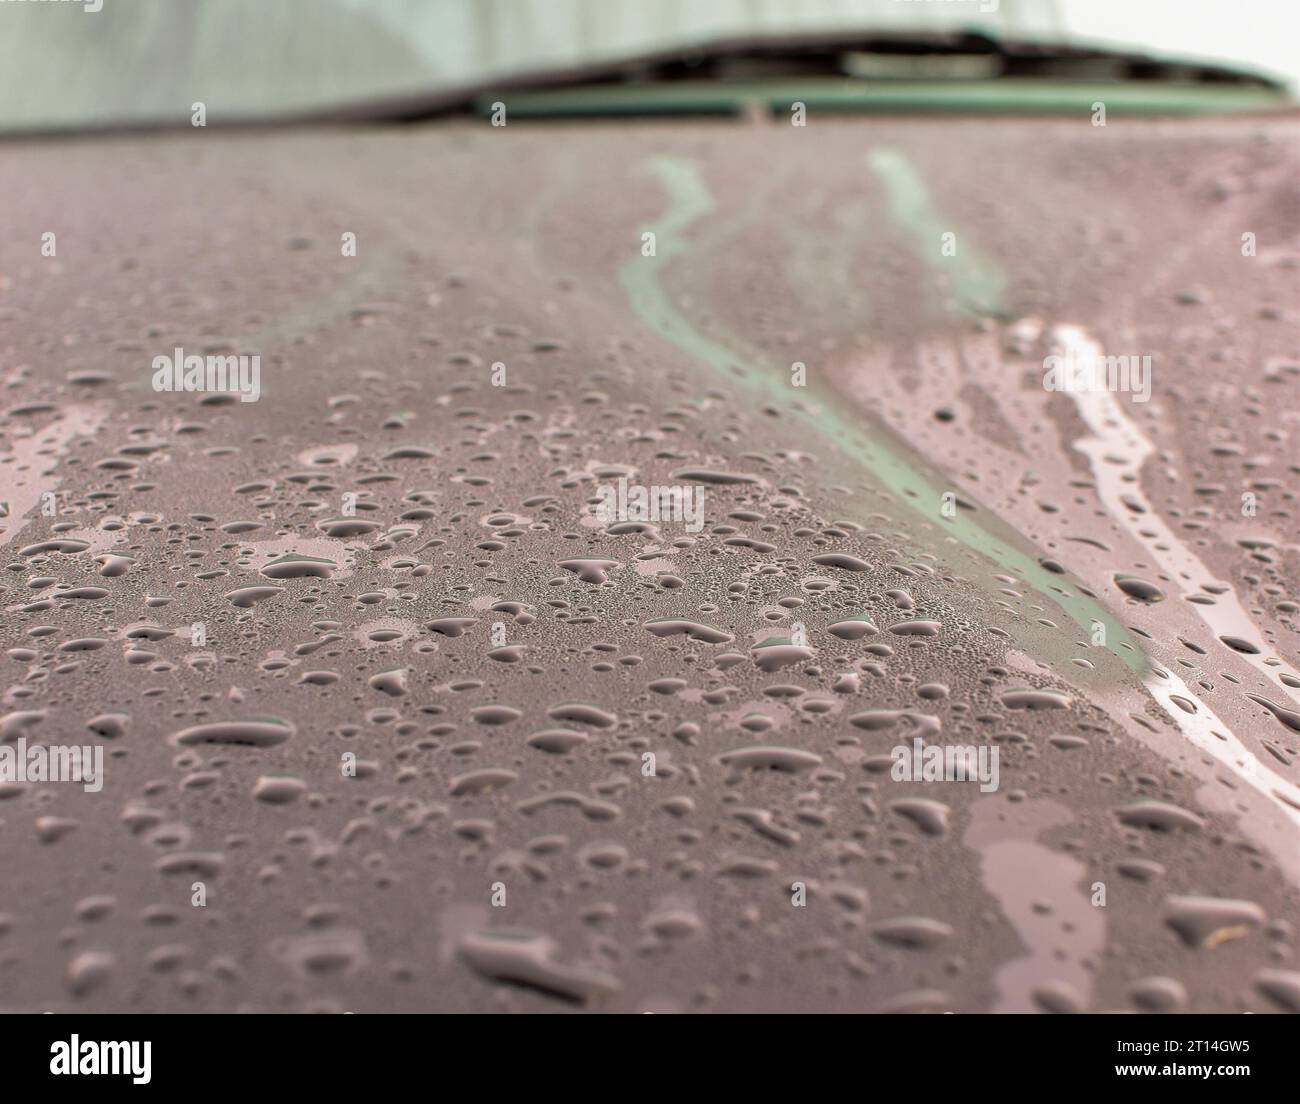 Kondenswasser auf der Motorhaube eines Fahrzeugs in dunkler Farbe mit einem unscharfen Scheibenwischer im Hintergrund. Stockfoto